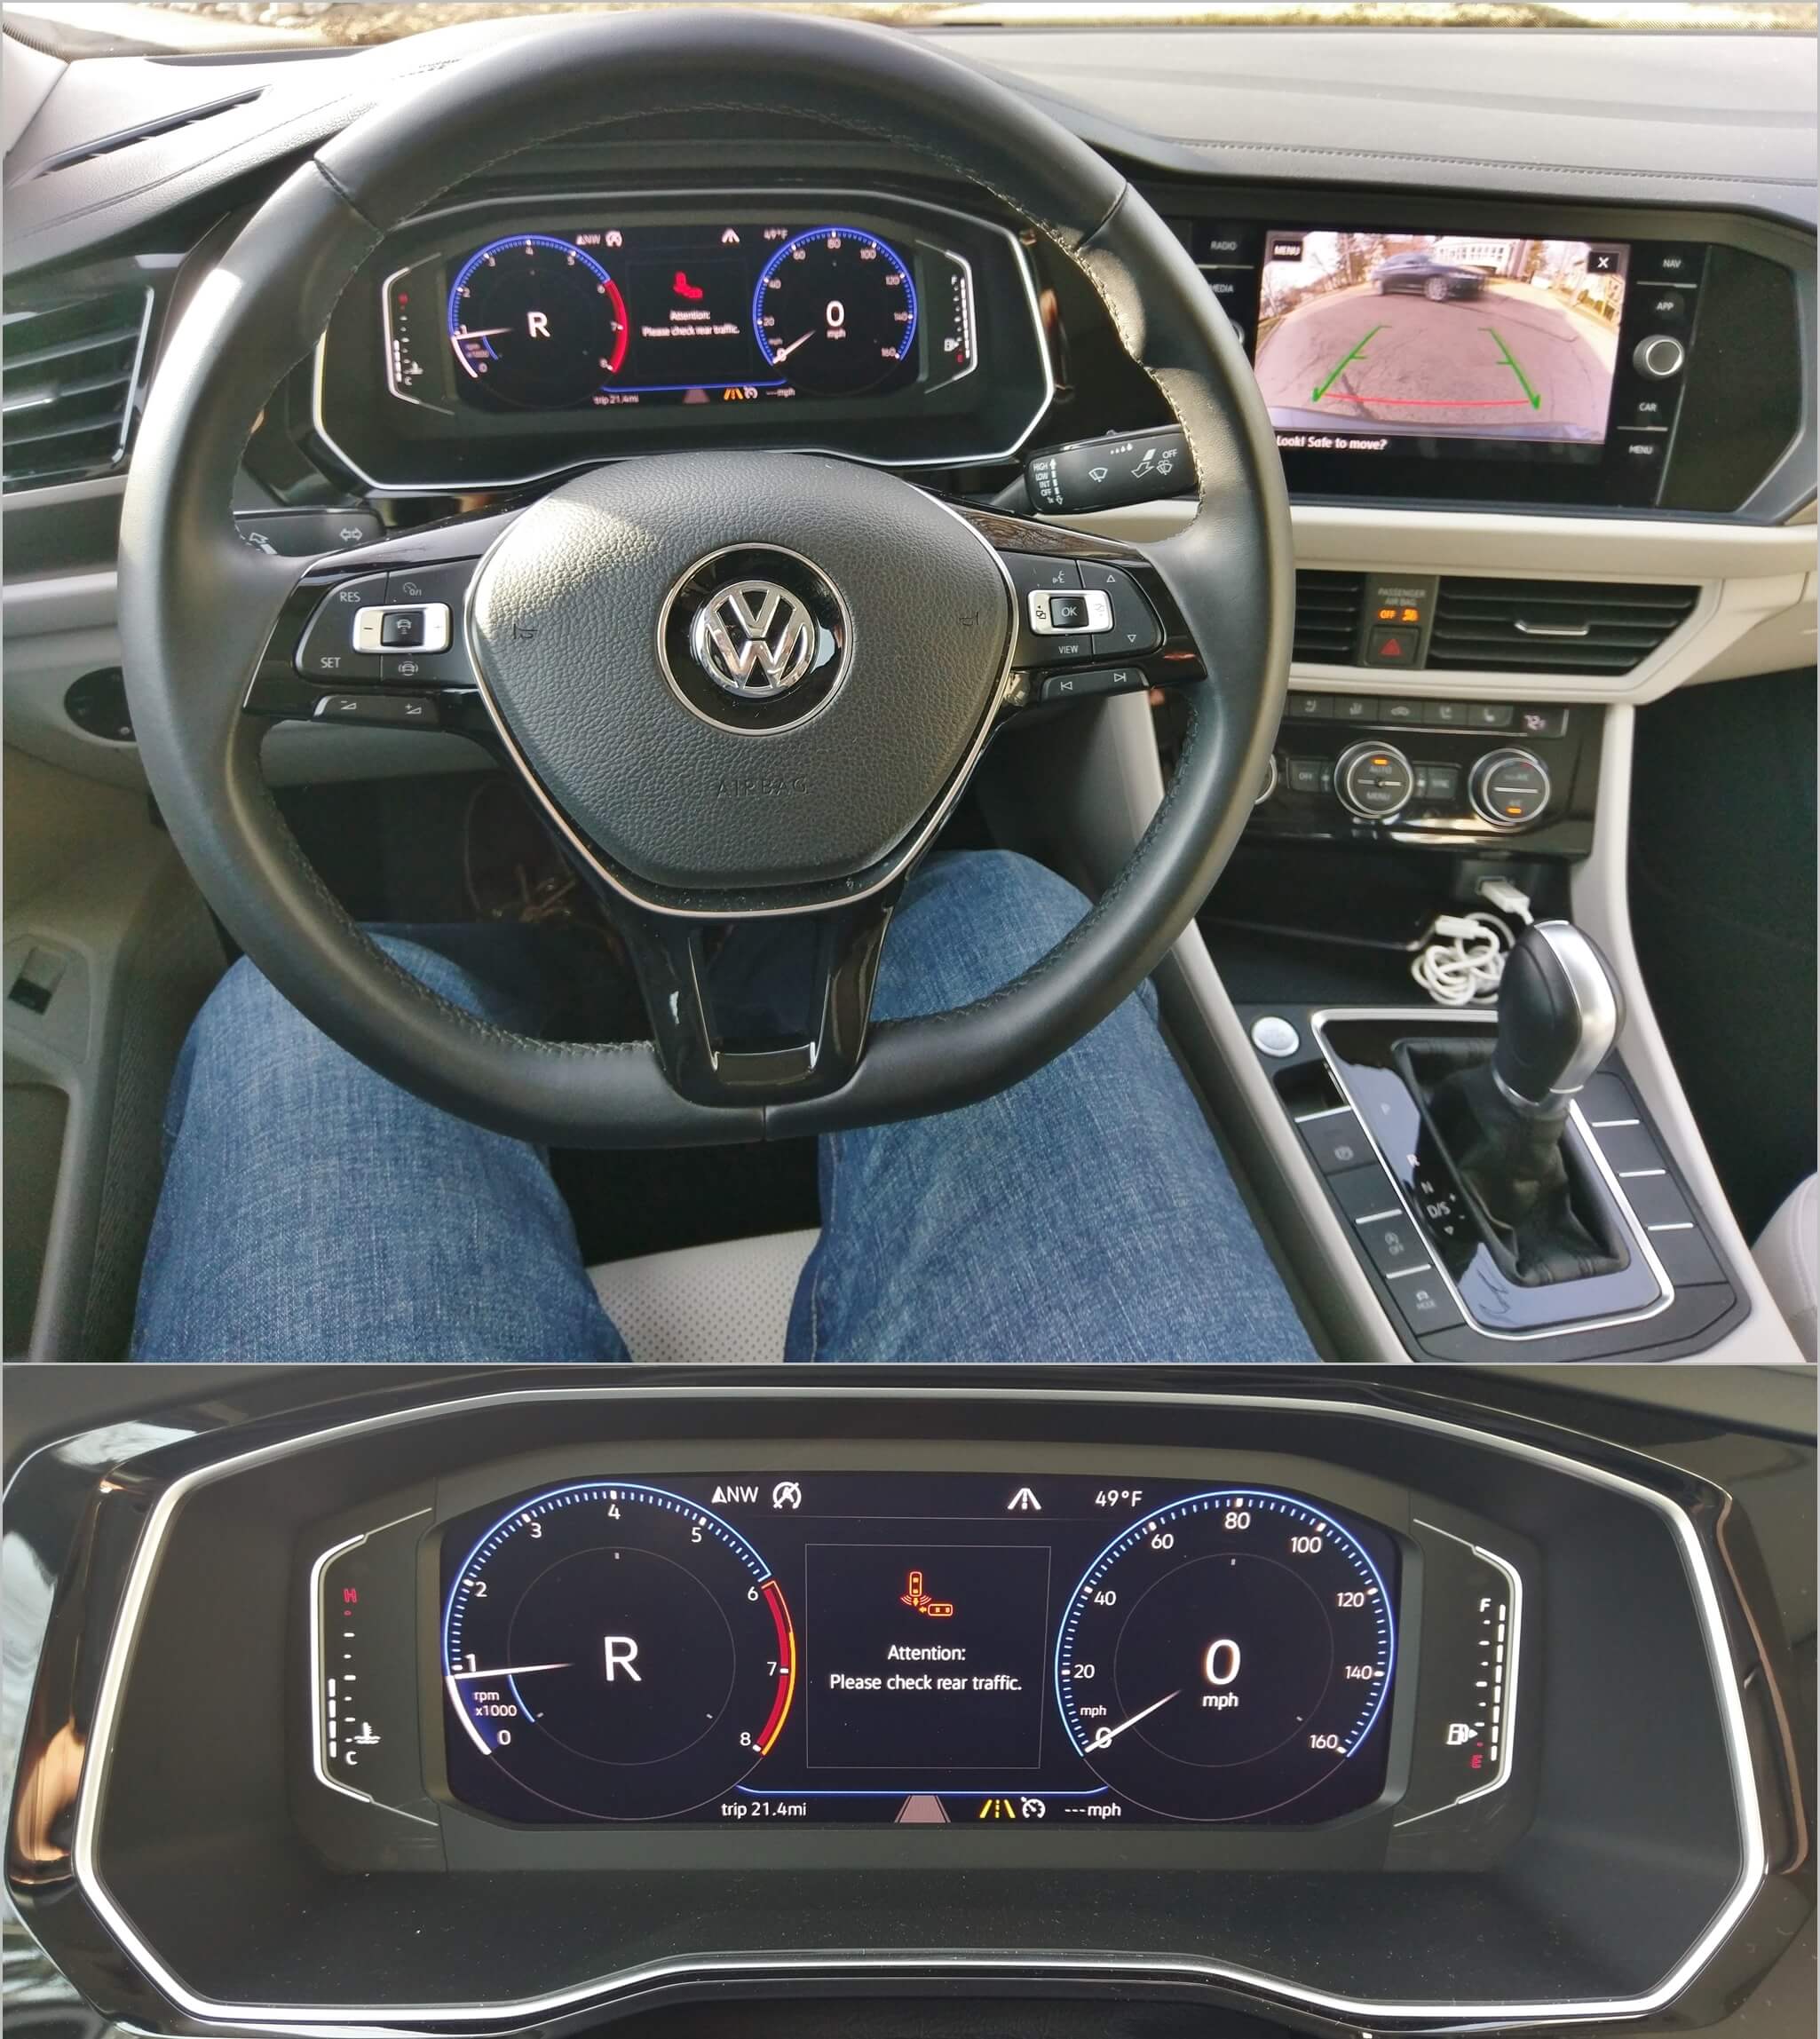 2019 Volkswagen Jetta SEL Premium: Rear cross traffic warning